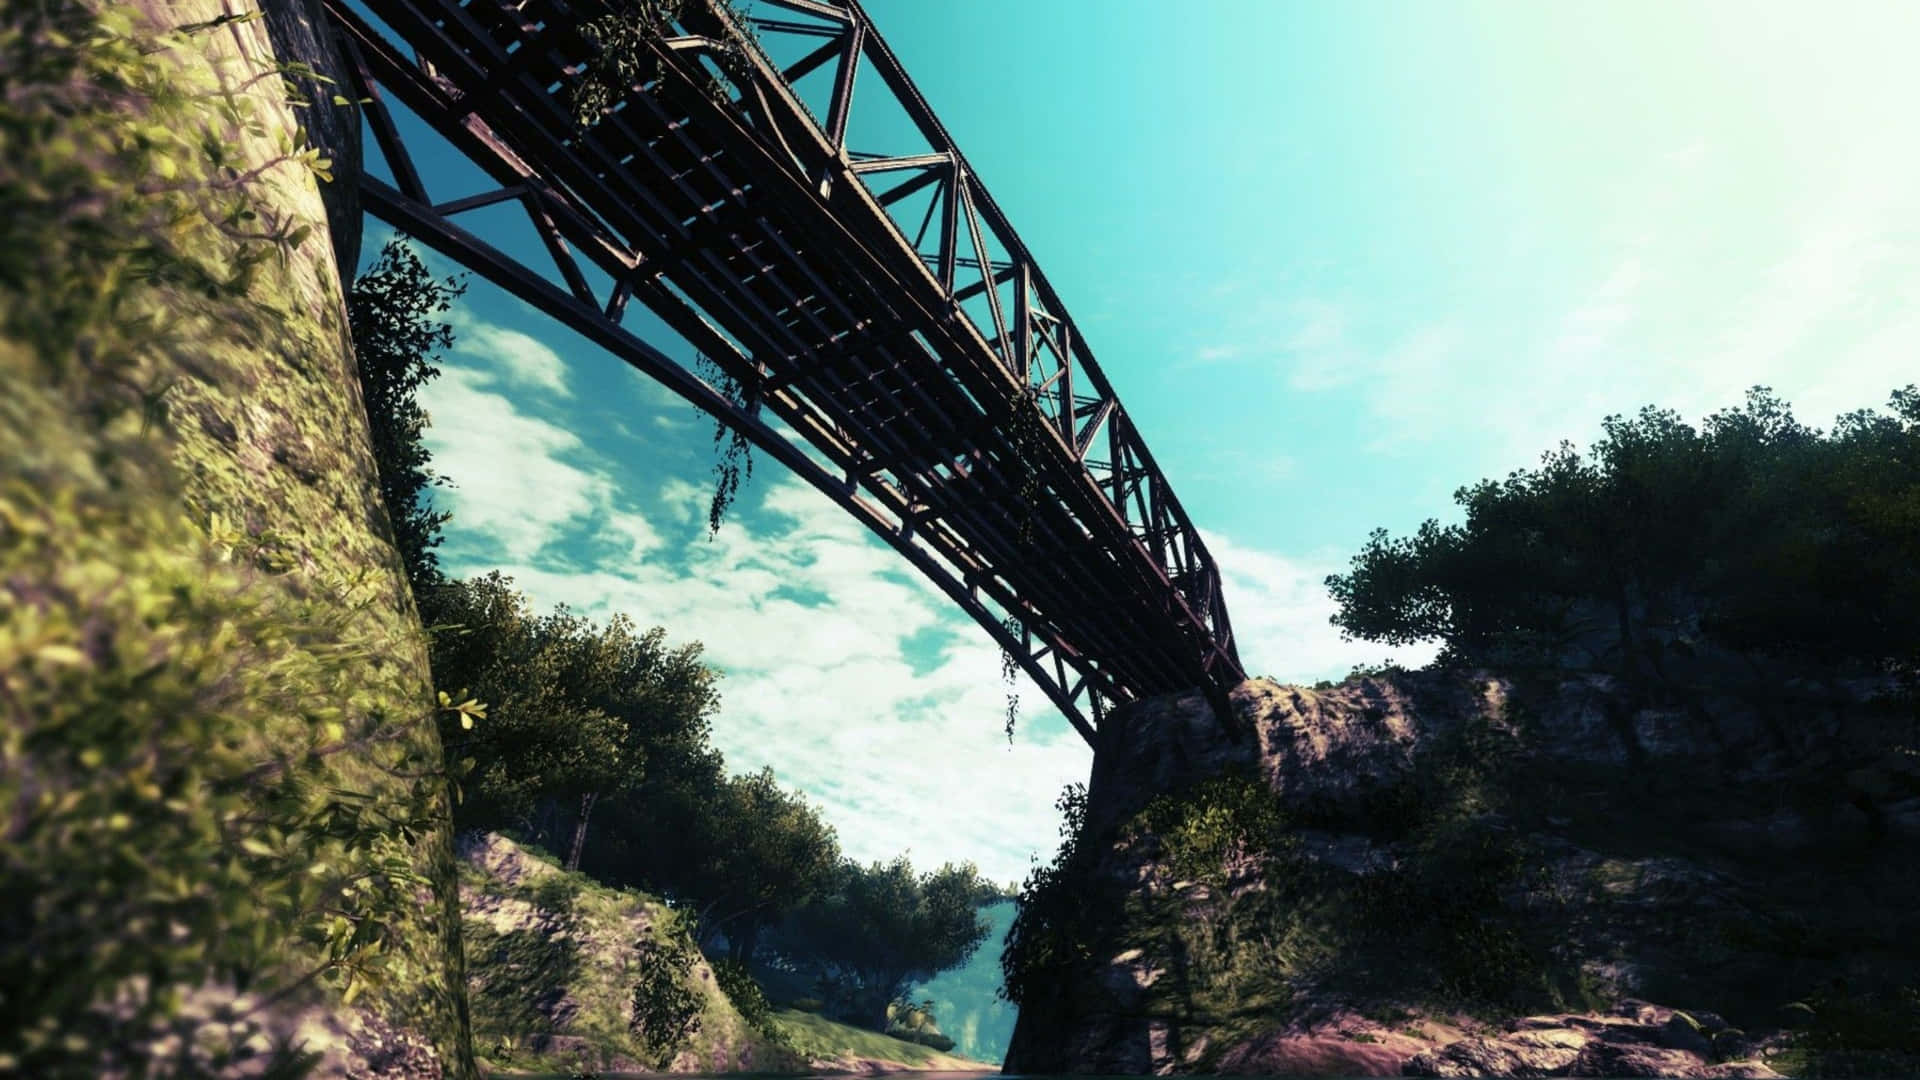 Impresionantepaisaje Del Juego Far Cry 3 En 1440p